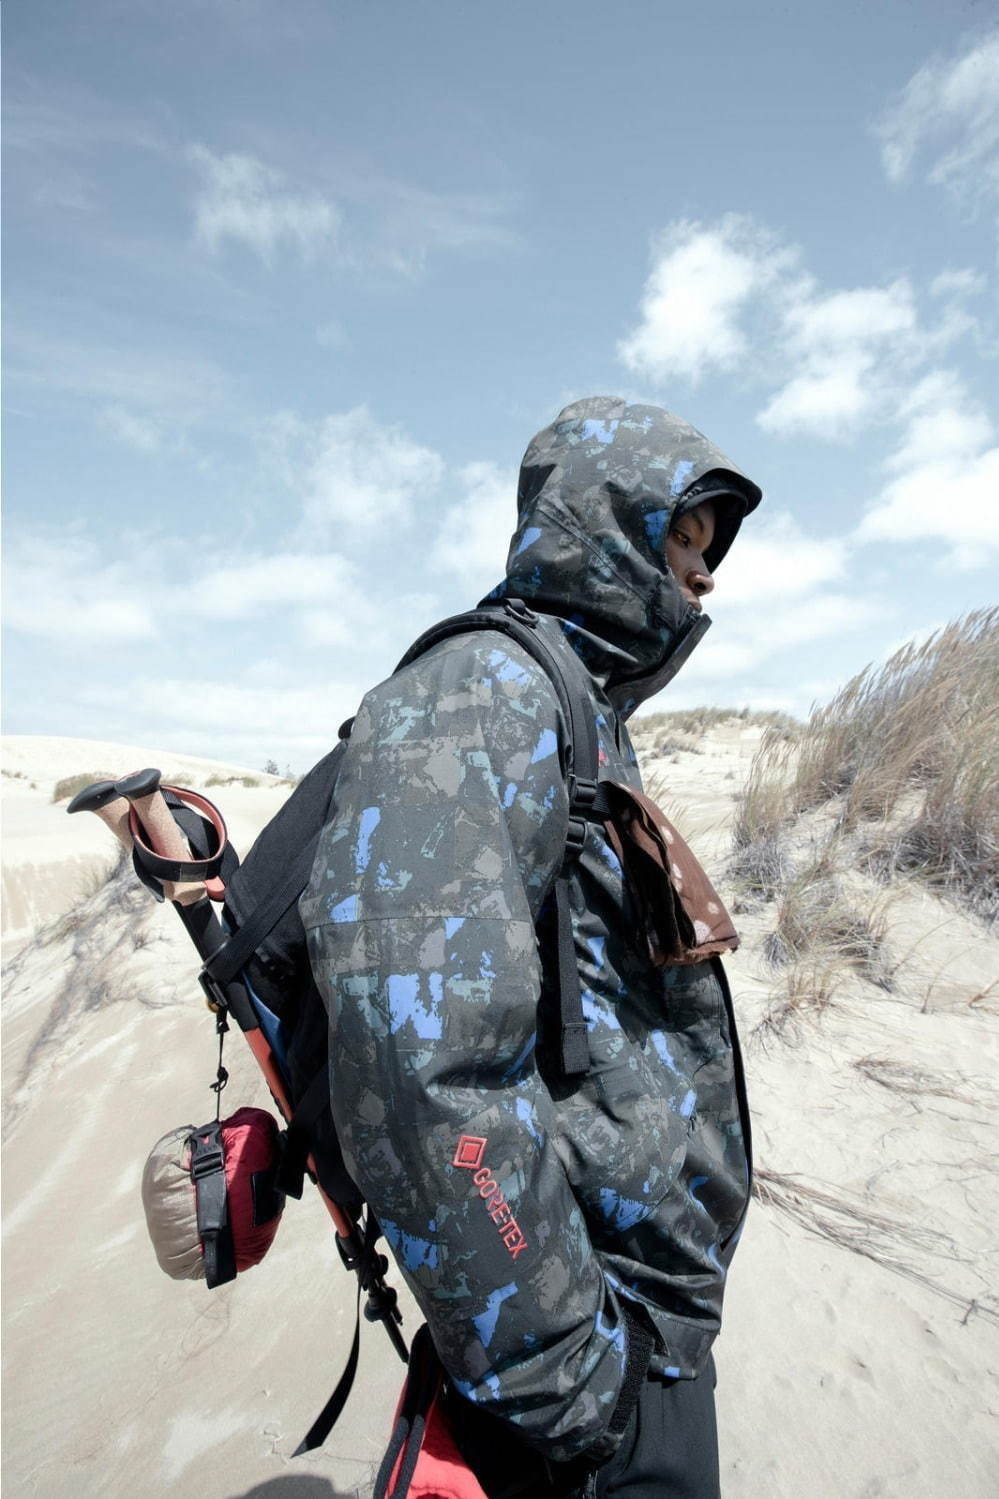 ゴアテックス”メンズジャケット特集 - 街着として活躍する防寒